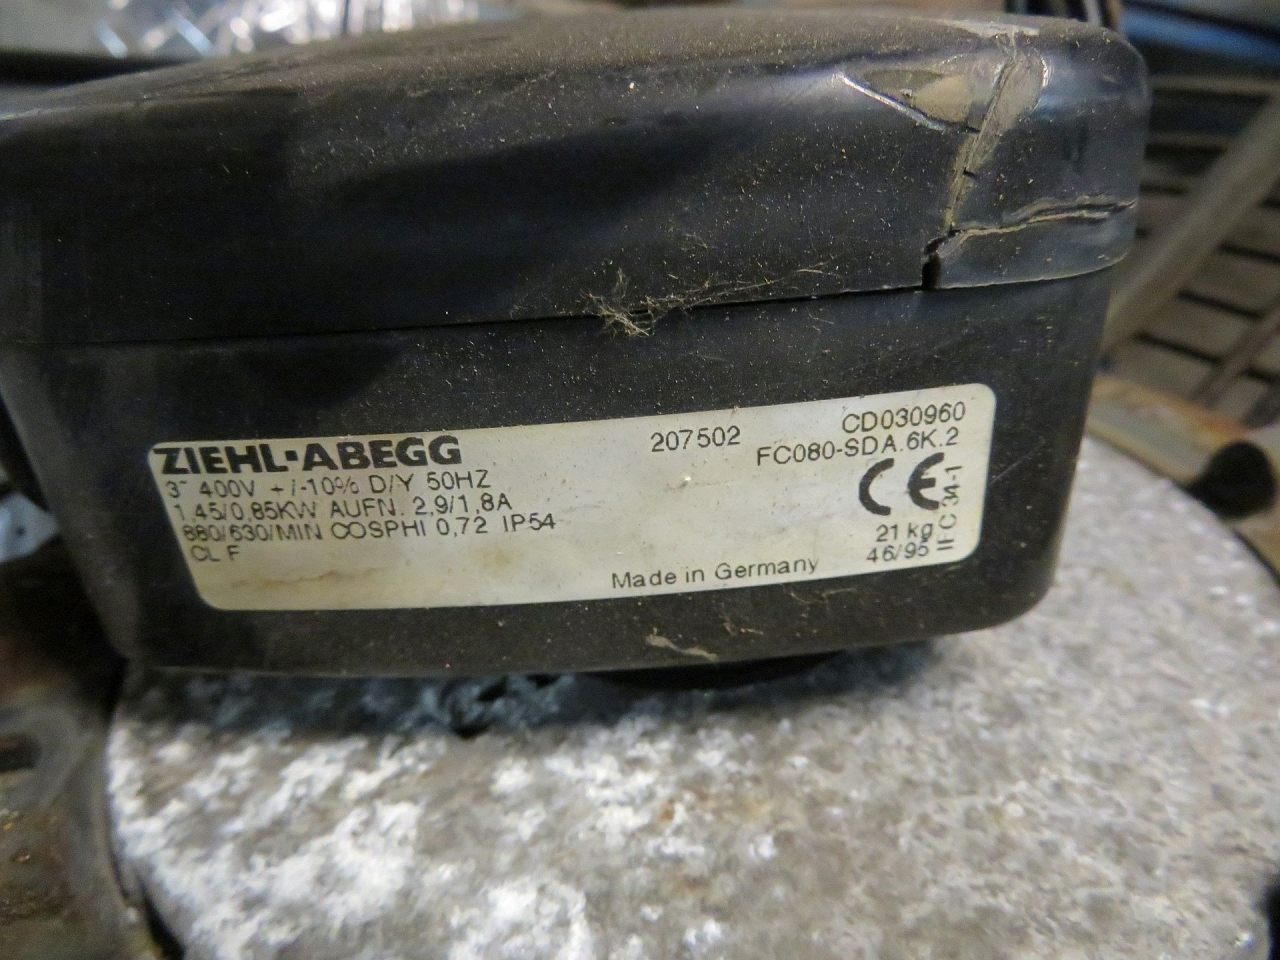 Ziehl Abegg FC080-SDA.6K.2 - HOS BV